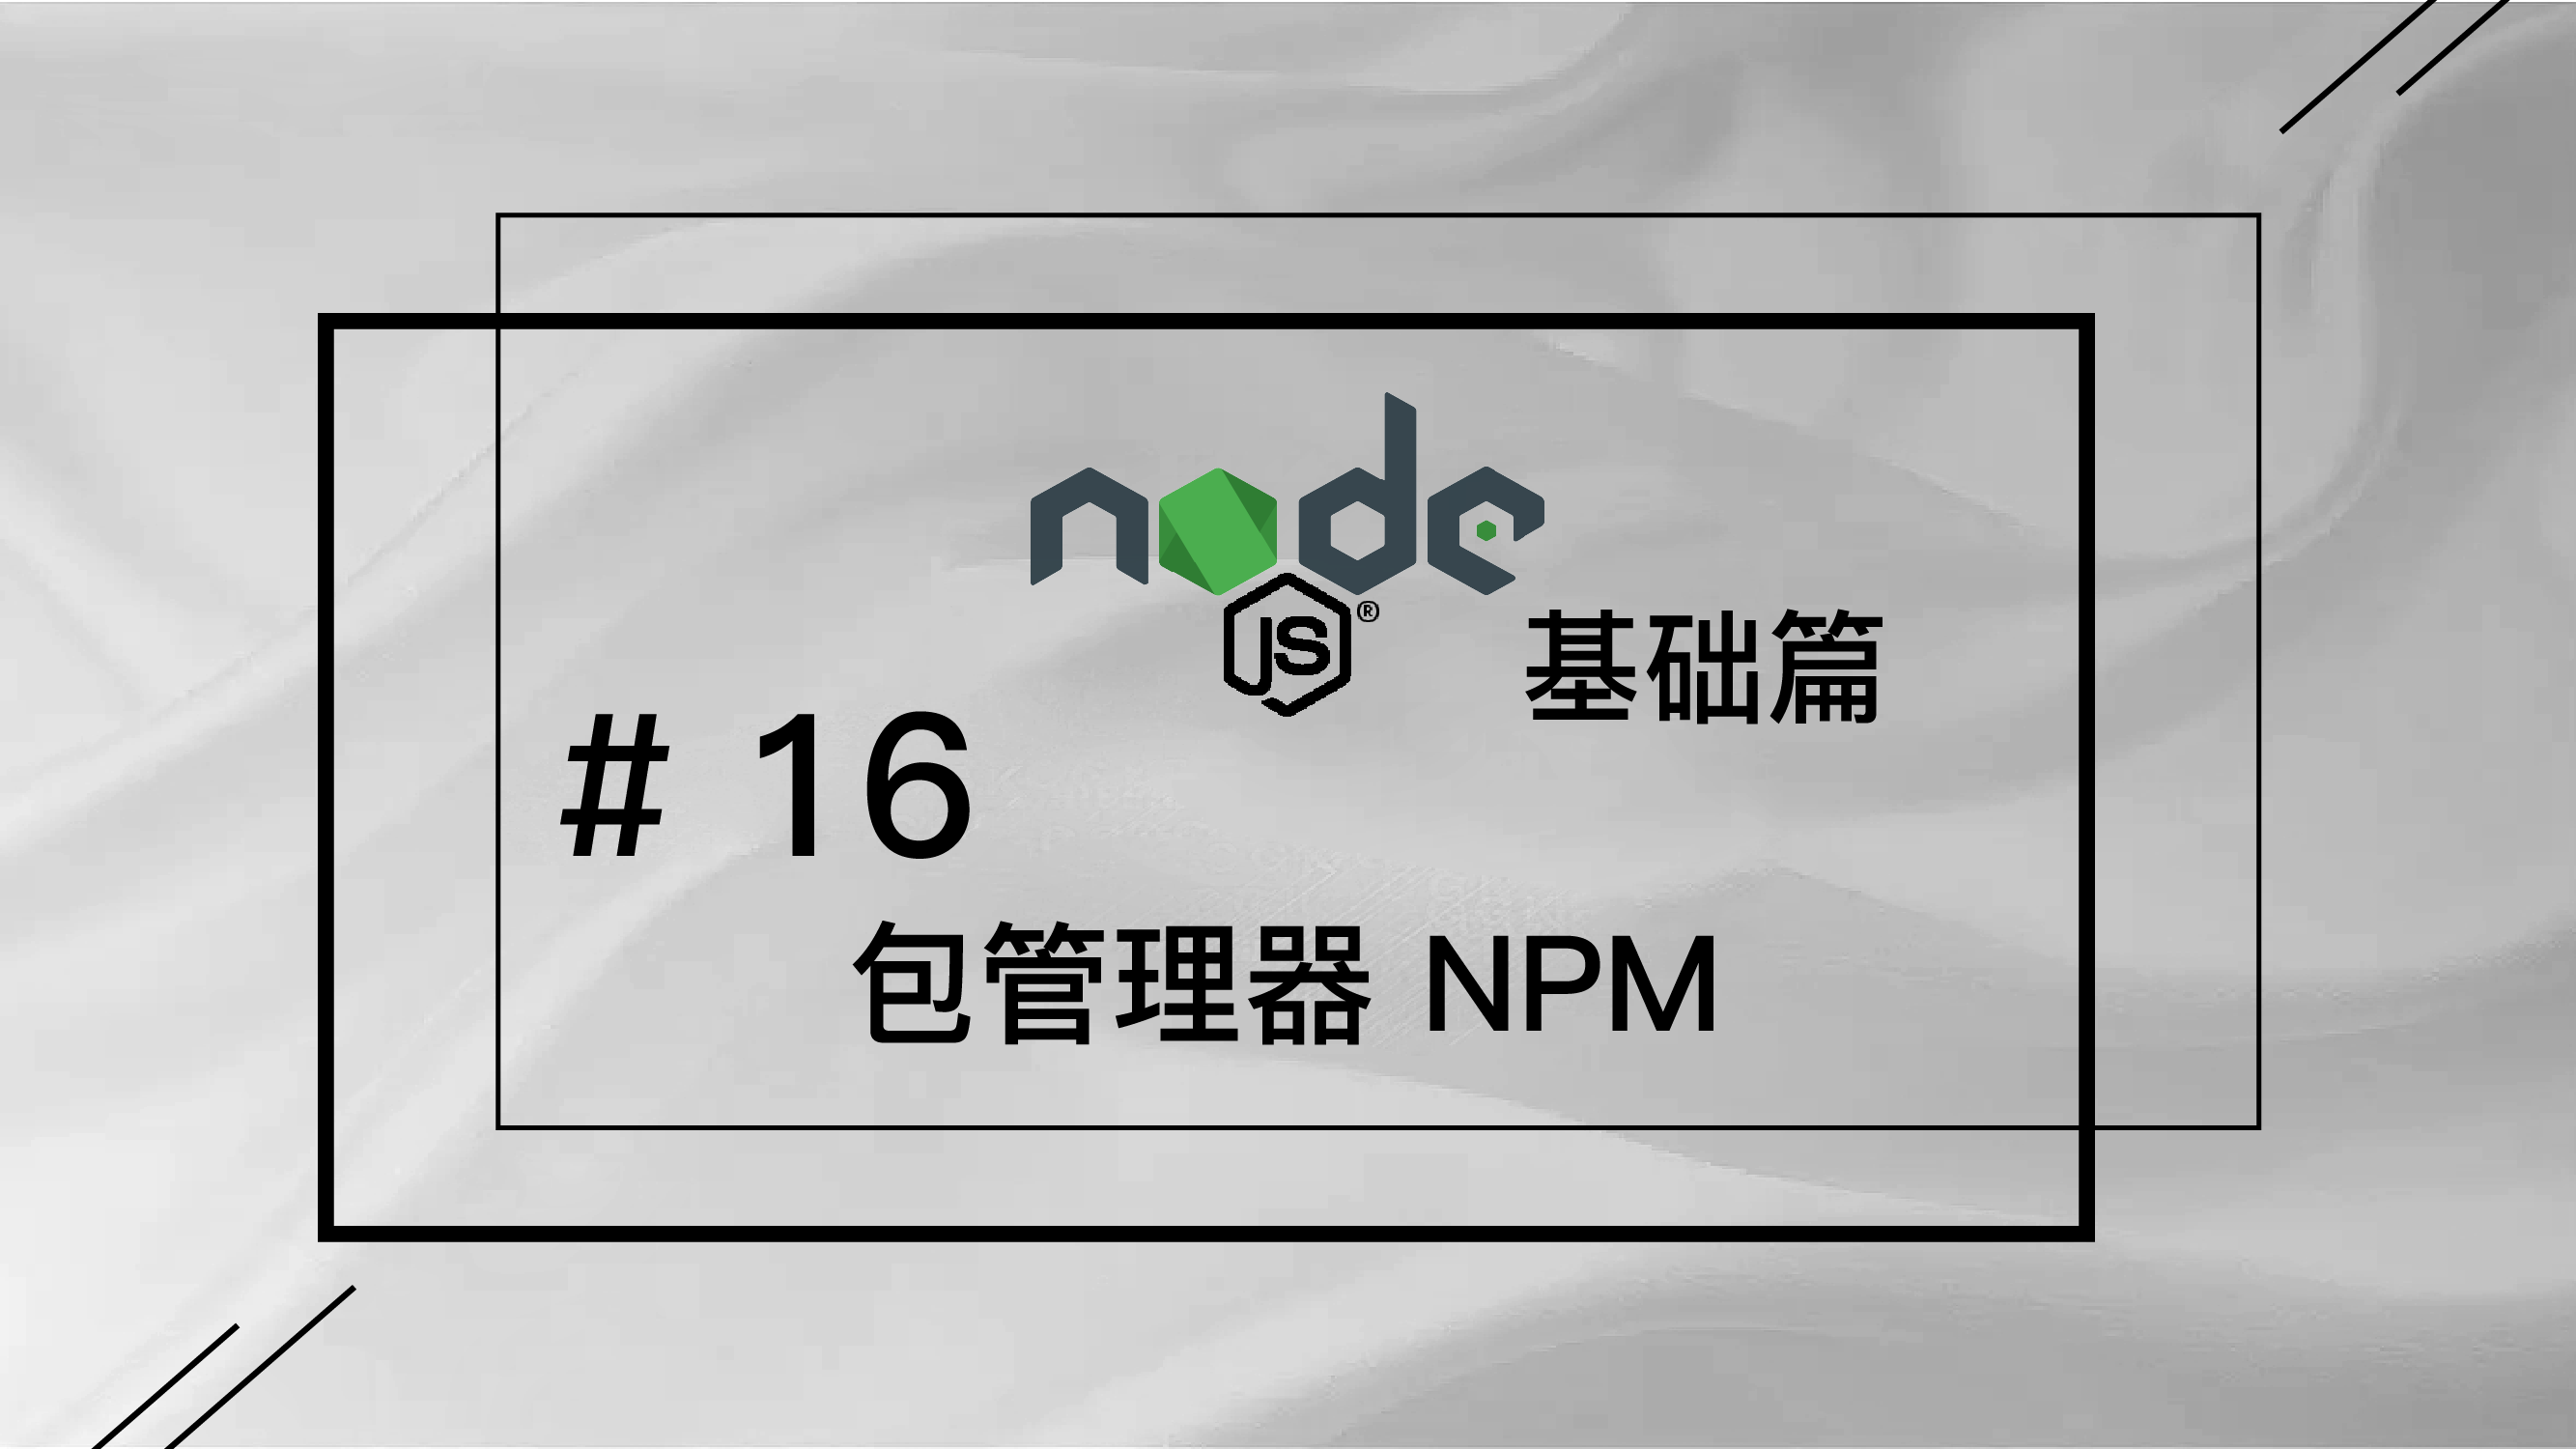 轻松学 Node.js - 基础篇免费视频教程 #16 包管理器 NPM